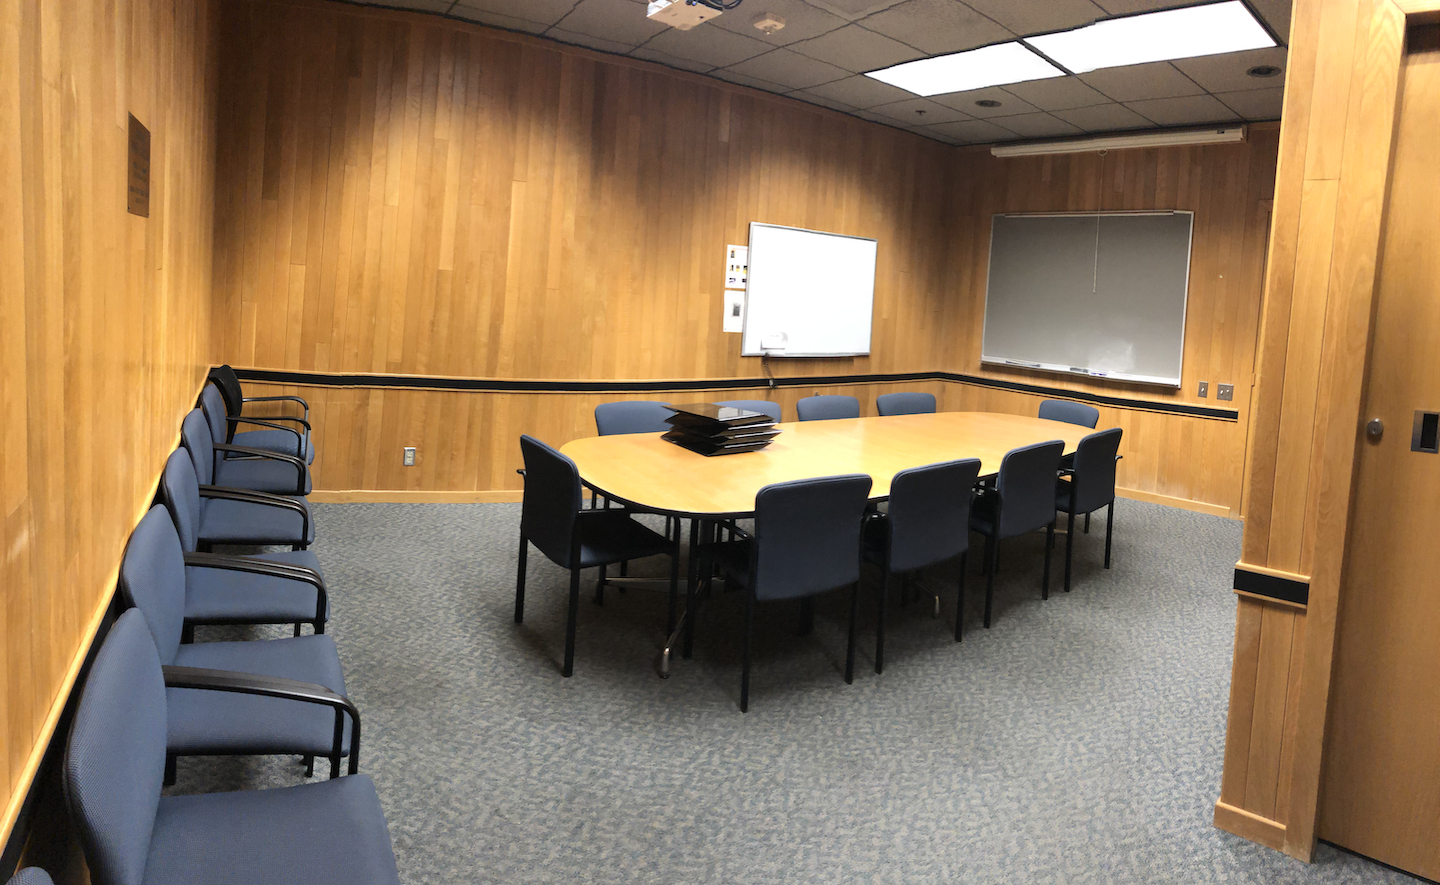 Koshland Hall 438 Conference Room Layout Photo